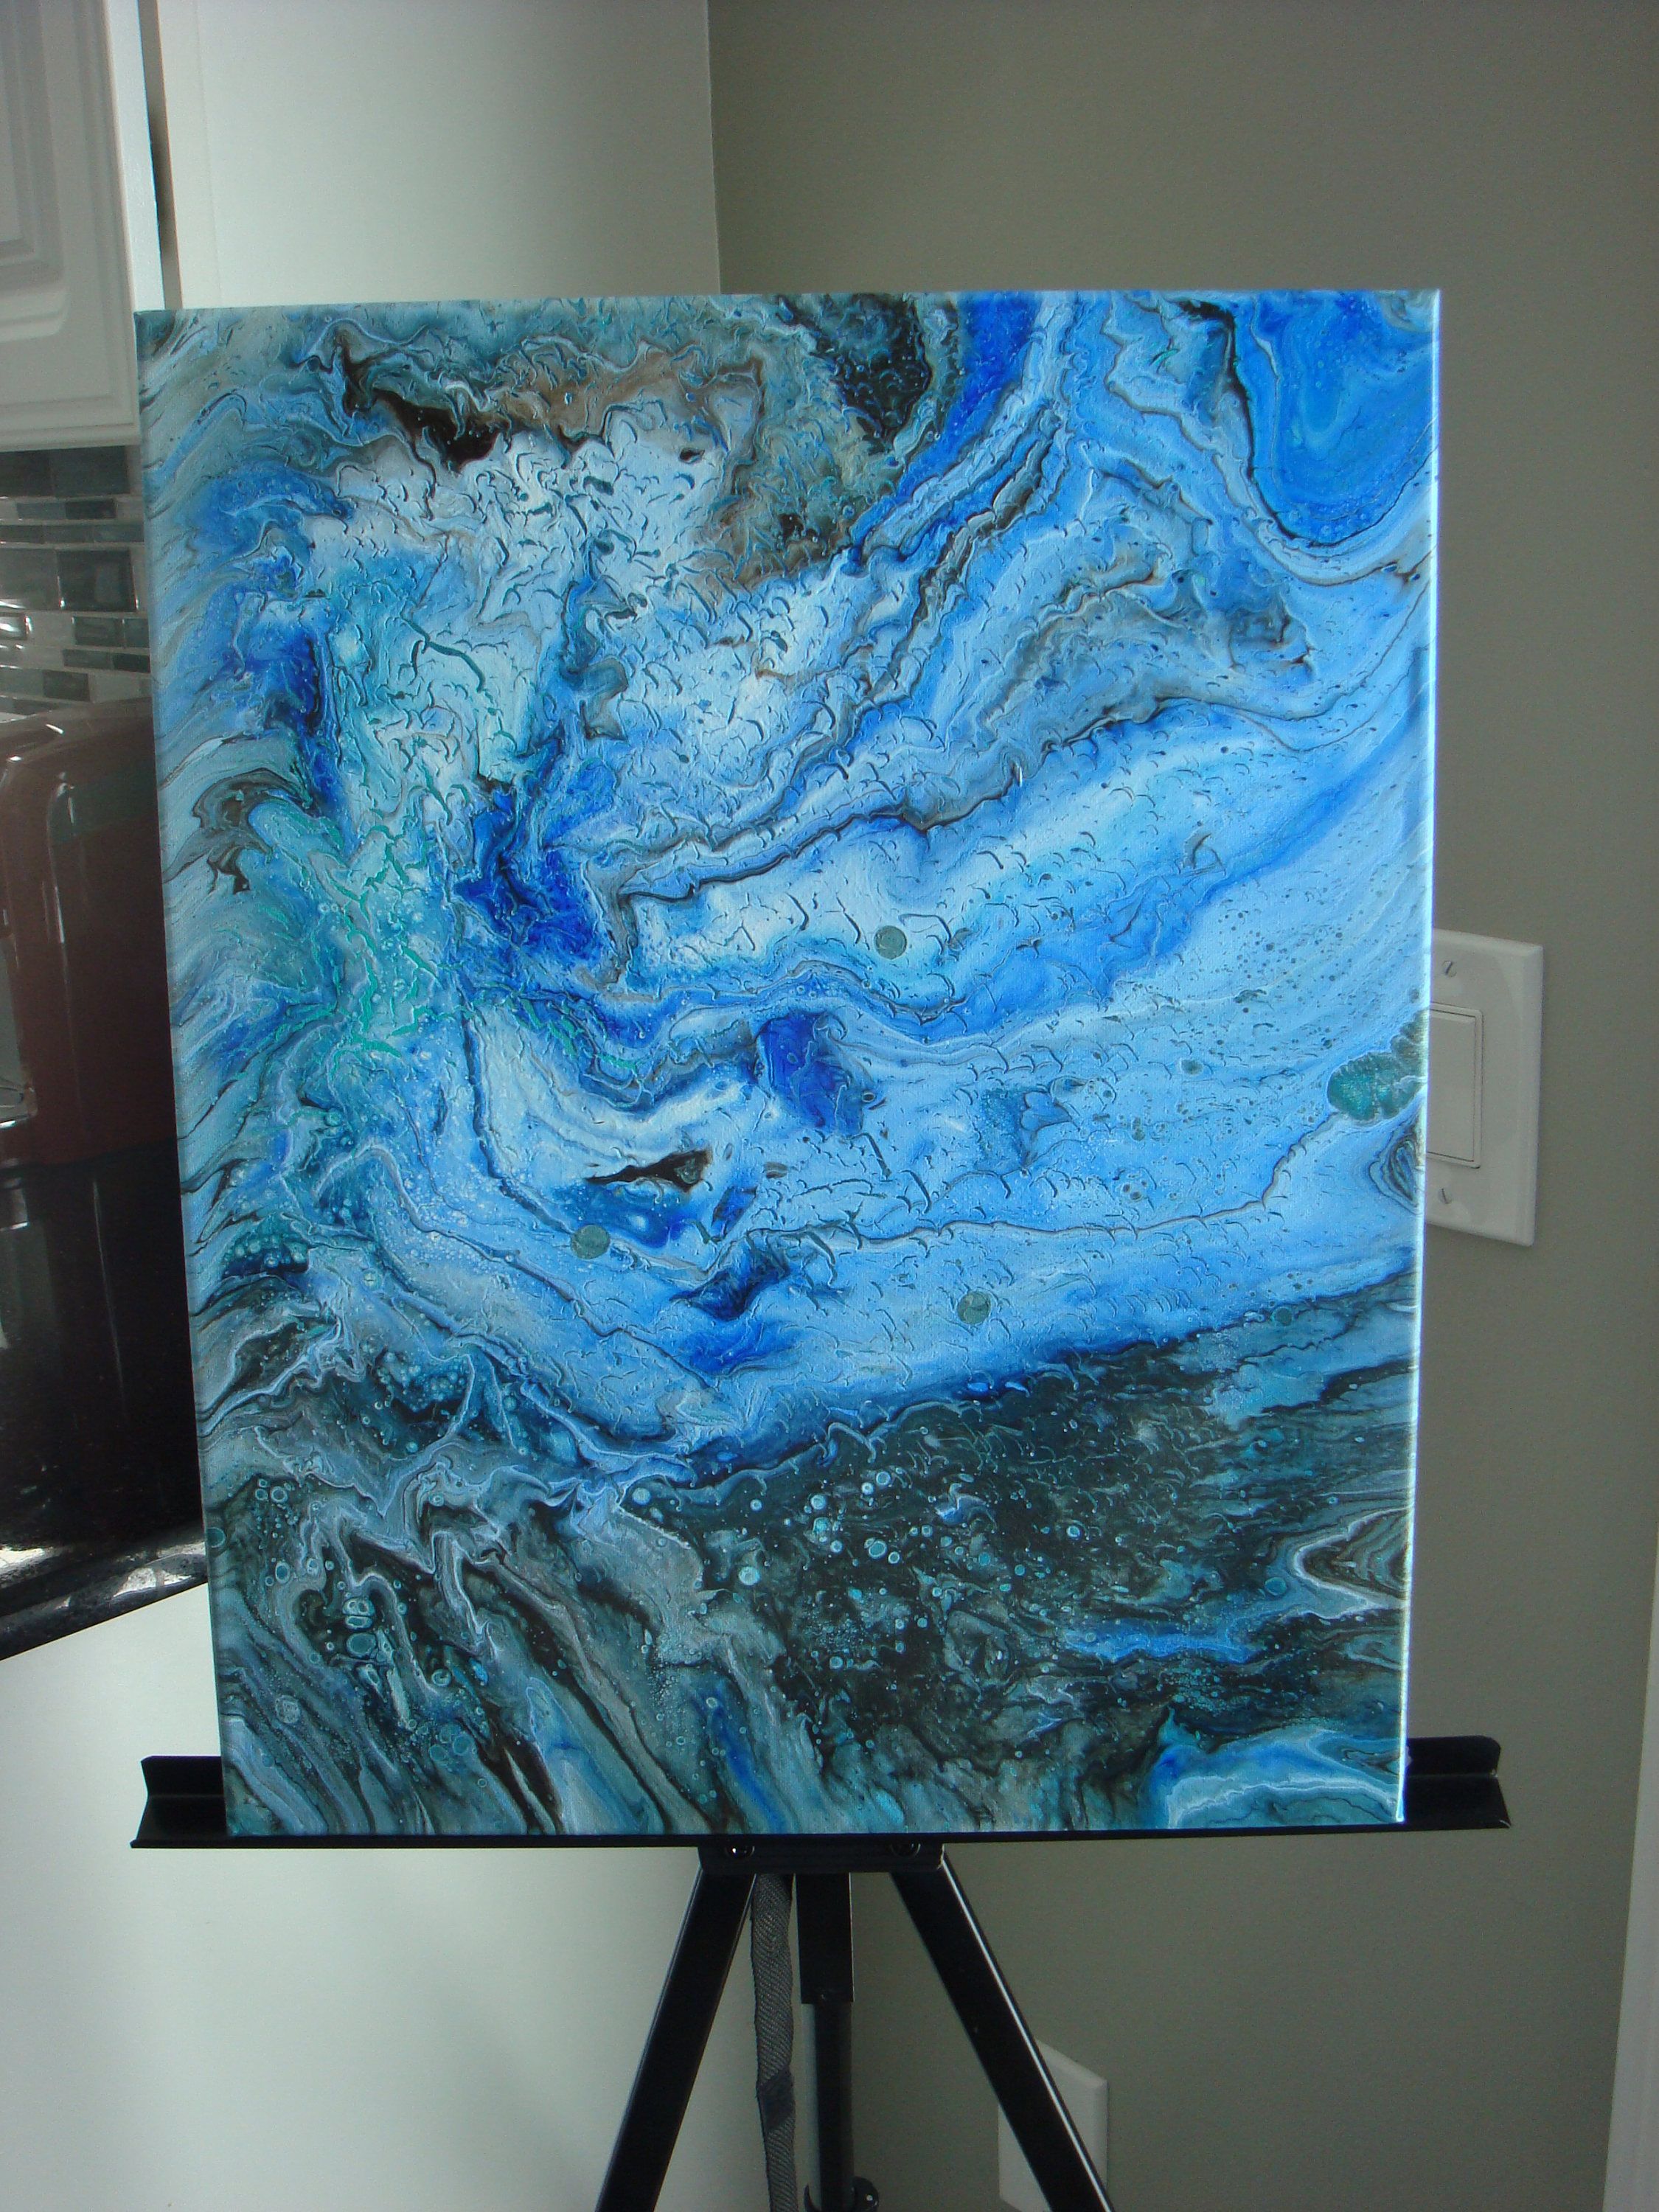 Fluid Abstract Art - Blue Ocean 2- Original Acrylic Painting on ...